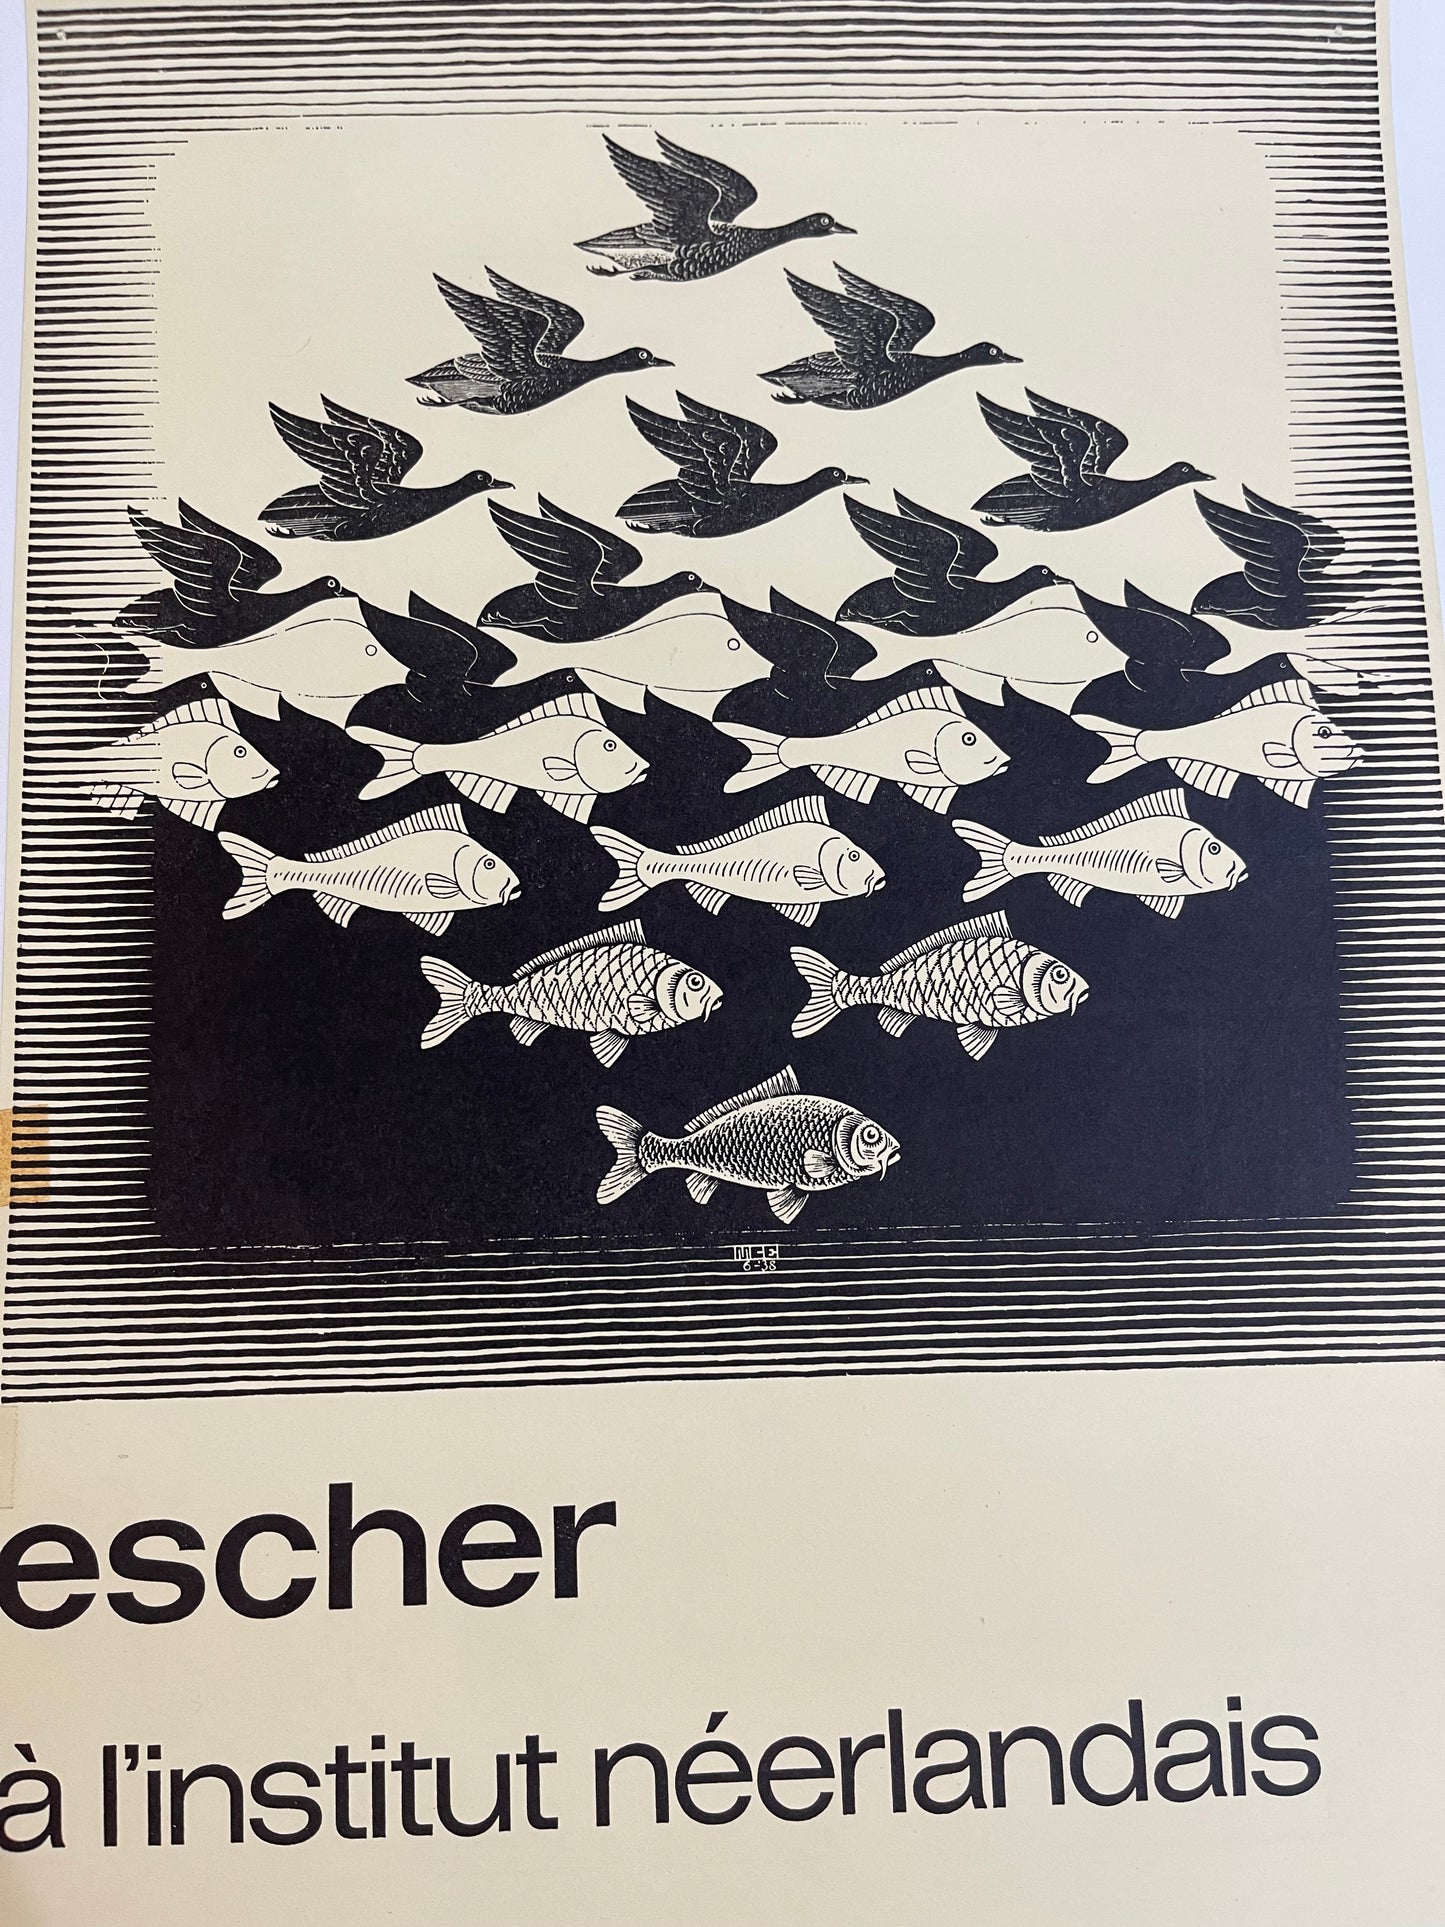 Escher Exhibition Poster